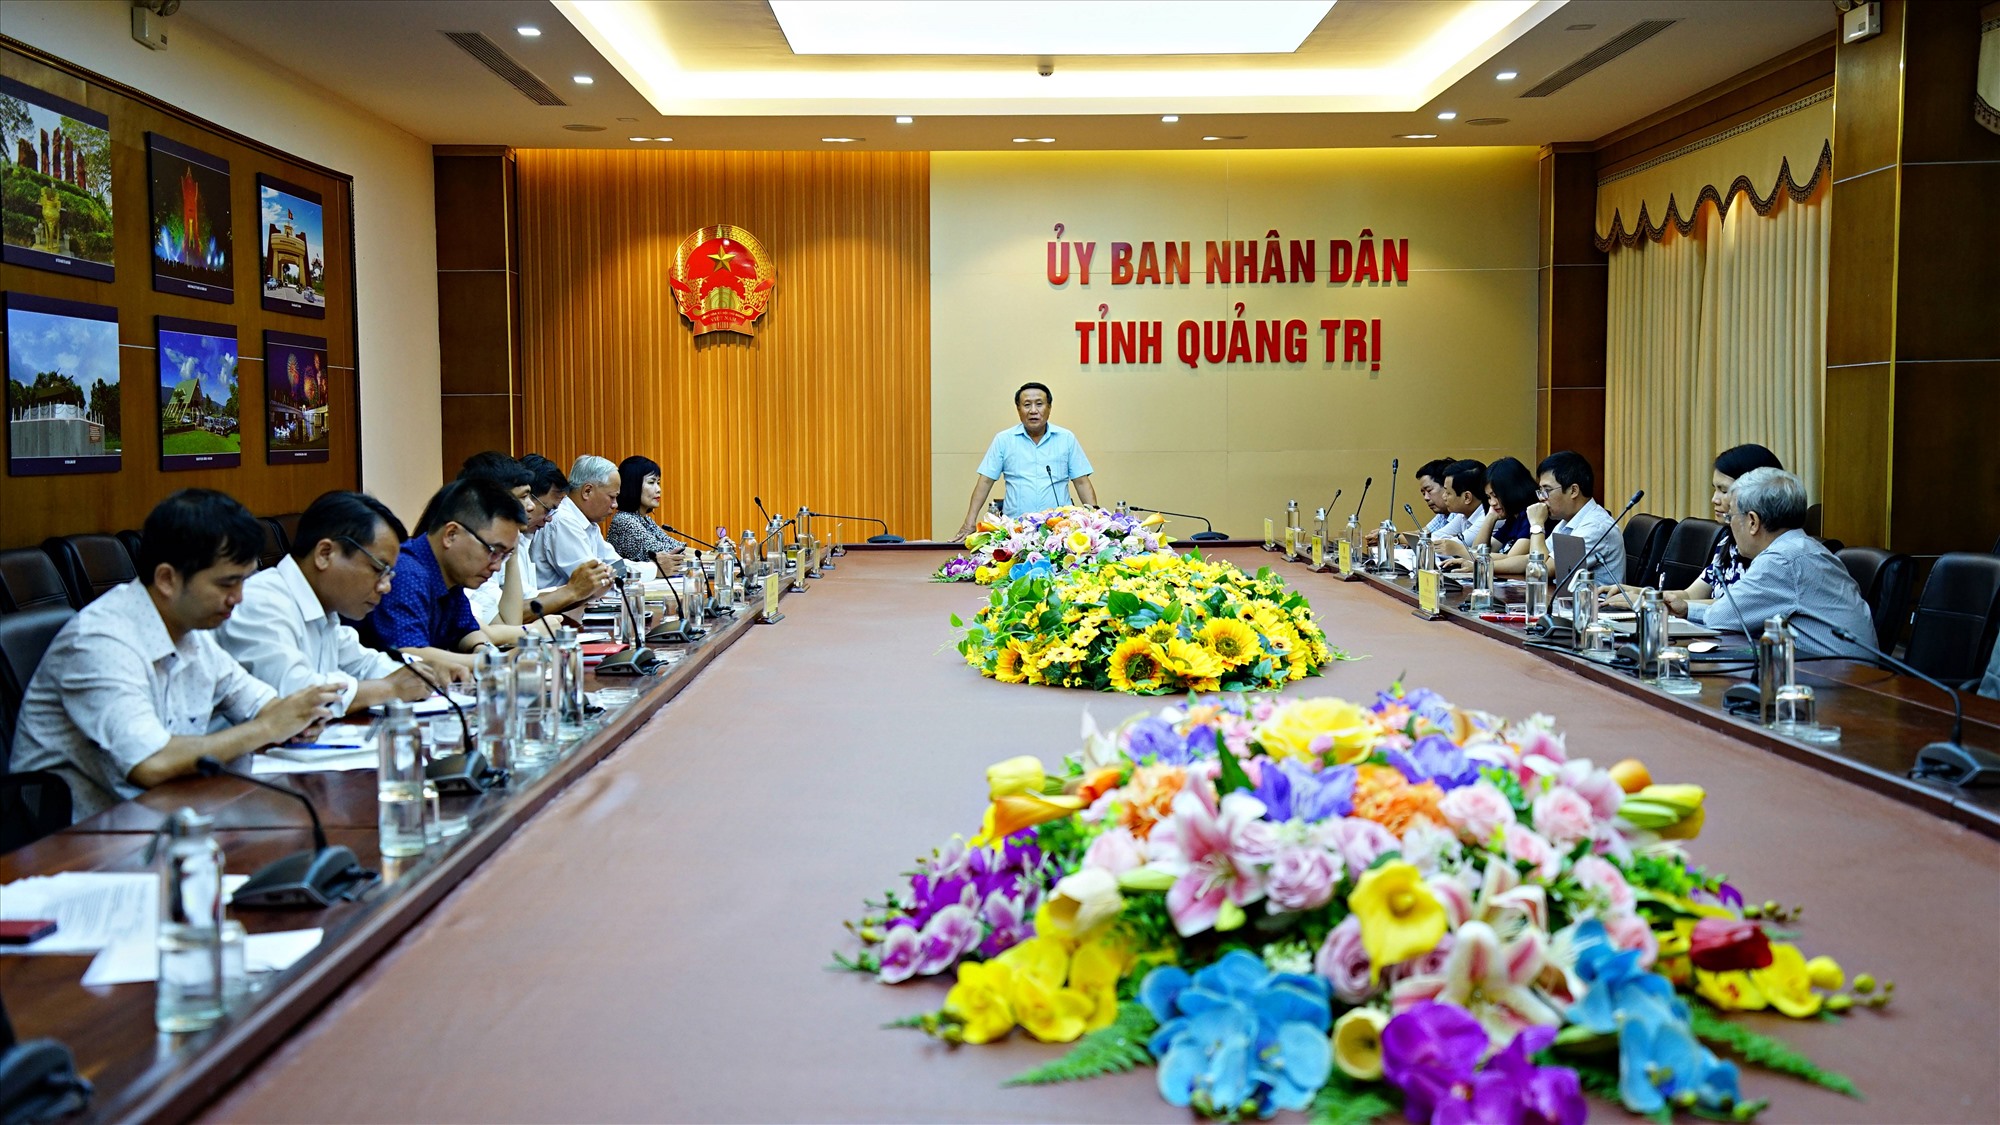 Phó Chủ tịch Thường trực UBND tỉnh Hà Sỹ Đồng phát biểu kết luận buổi làm việc - Ảnh: L.A